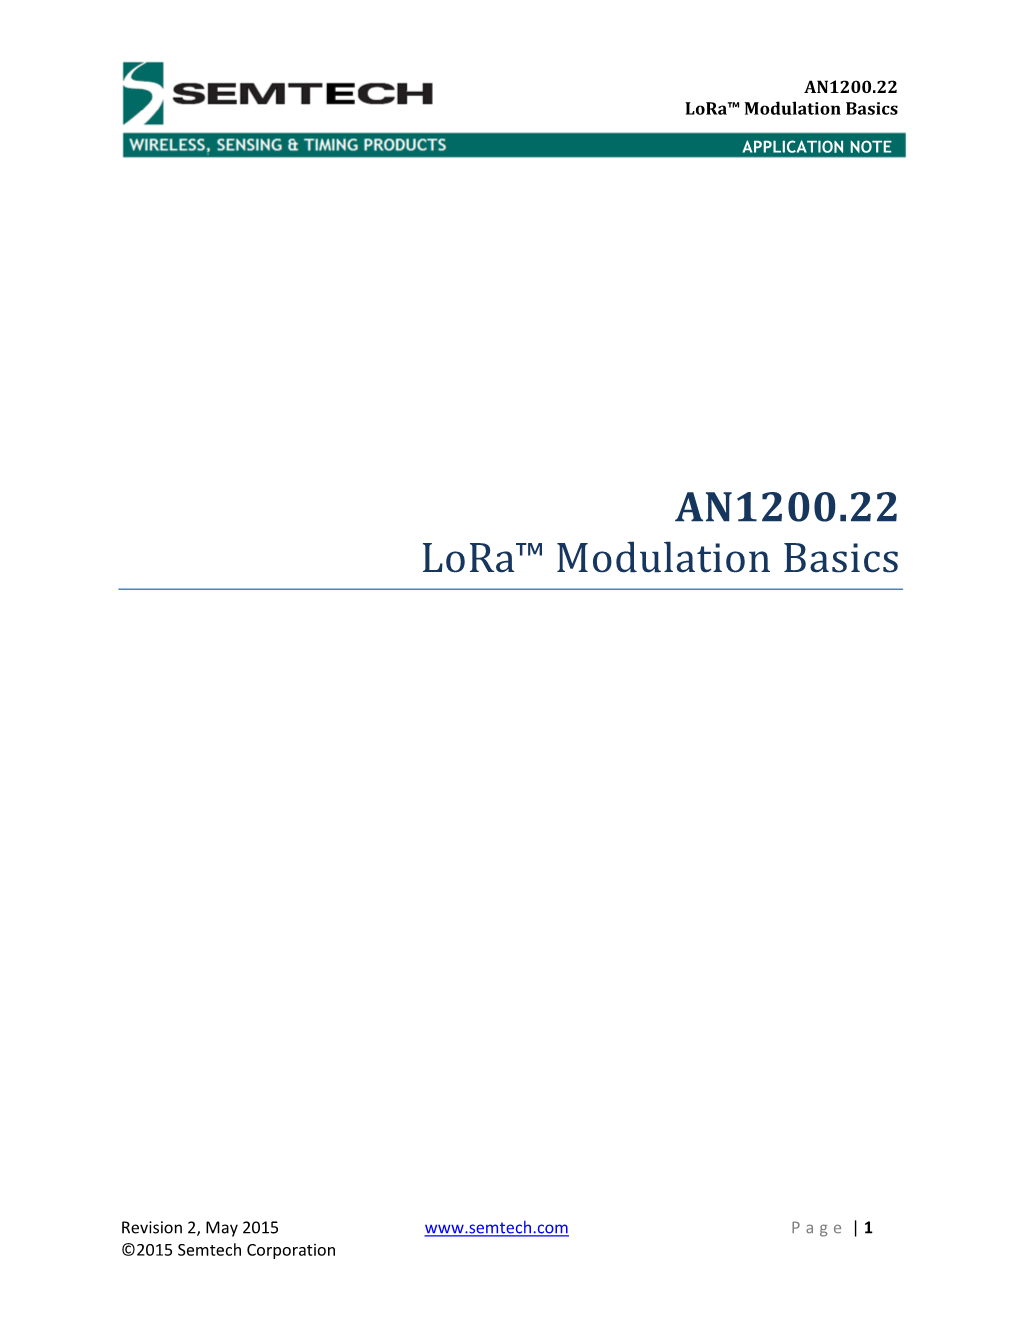 AN1200.22 Lora™ Modulation Basics